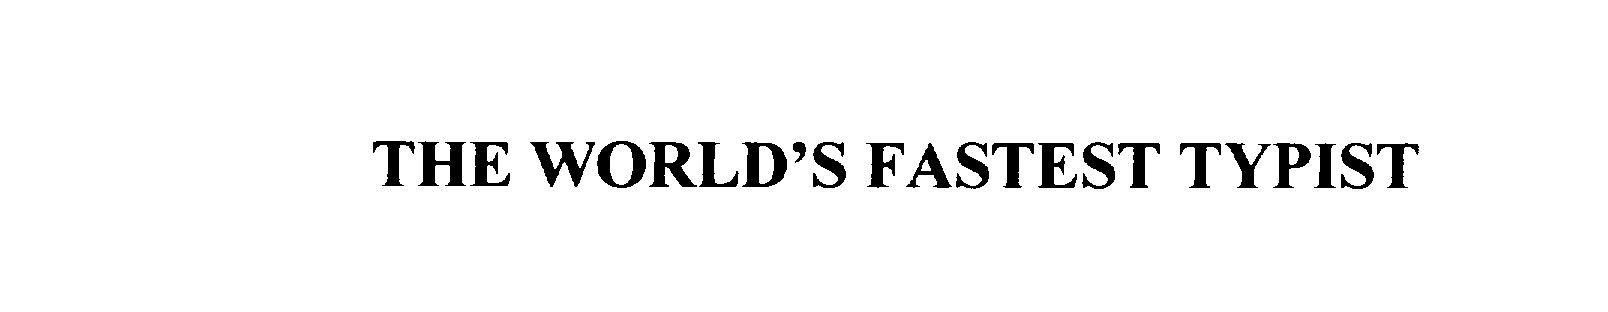  THE WORLD'S FASTEST TYPIST